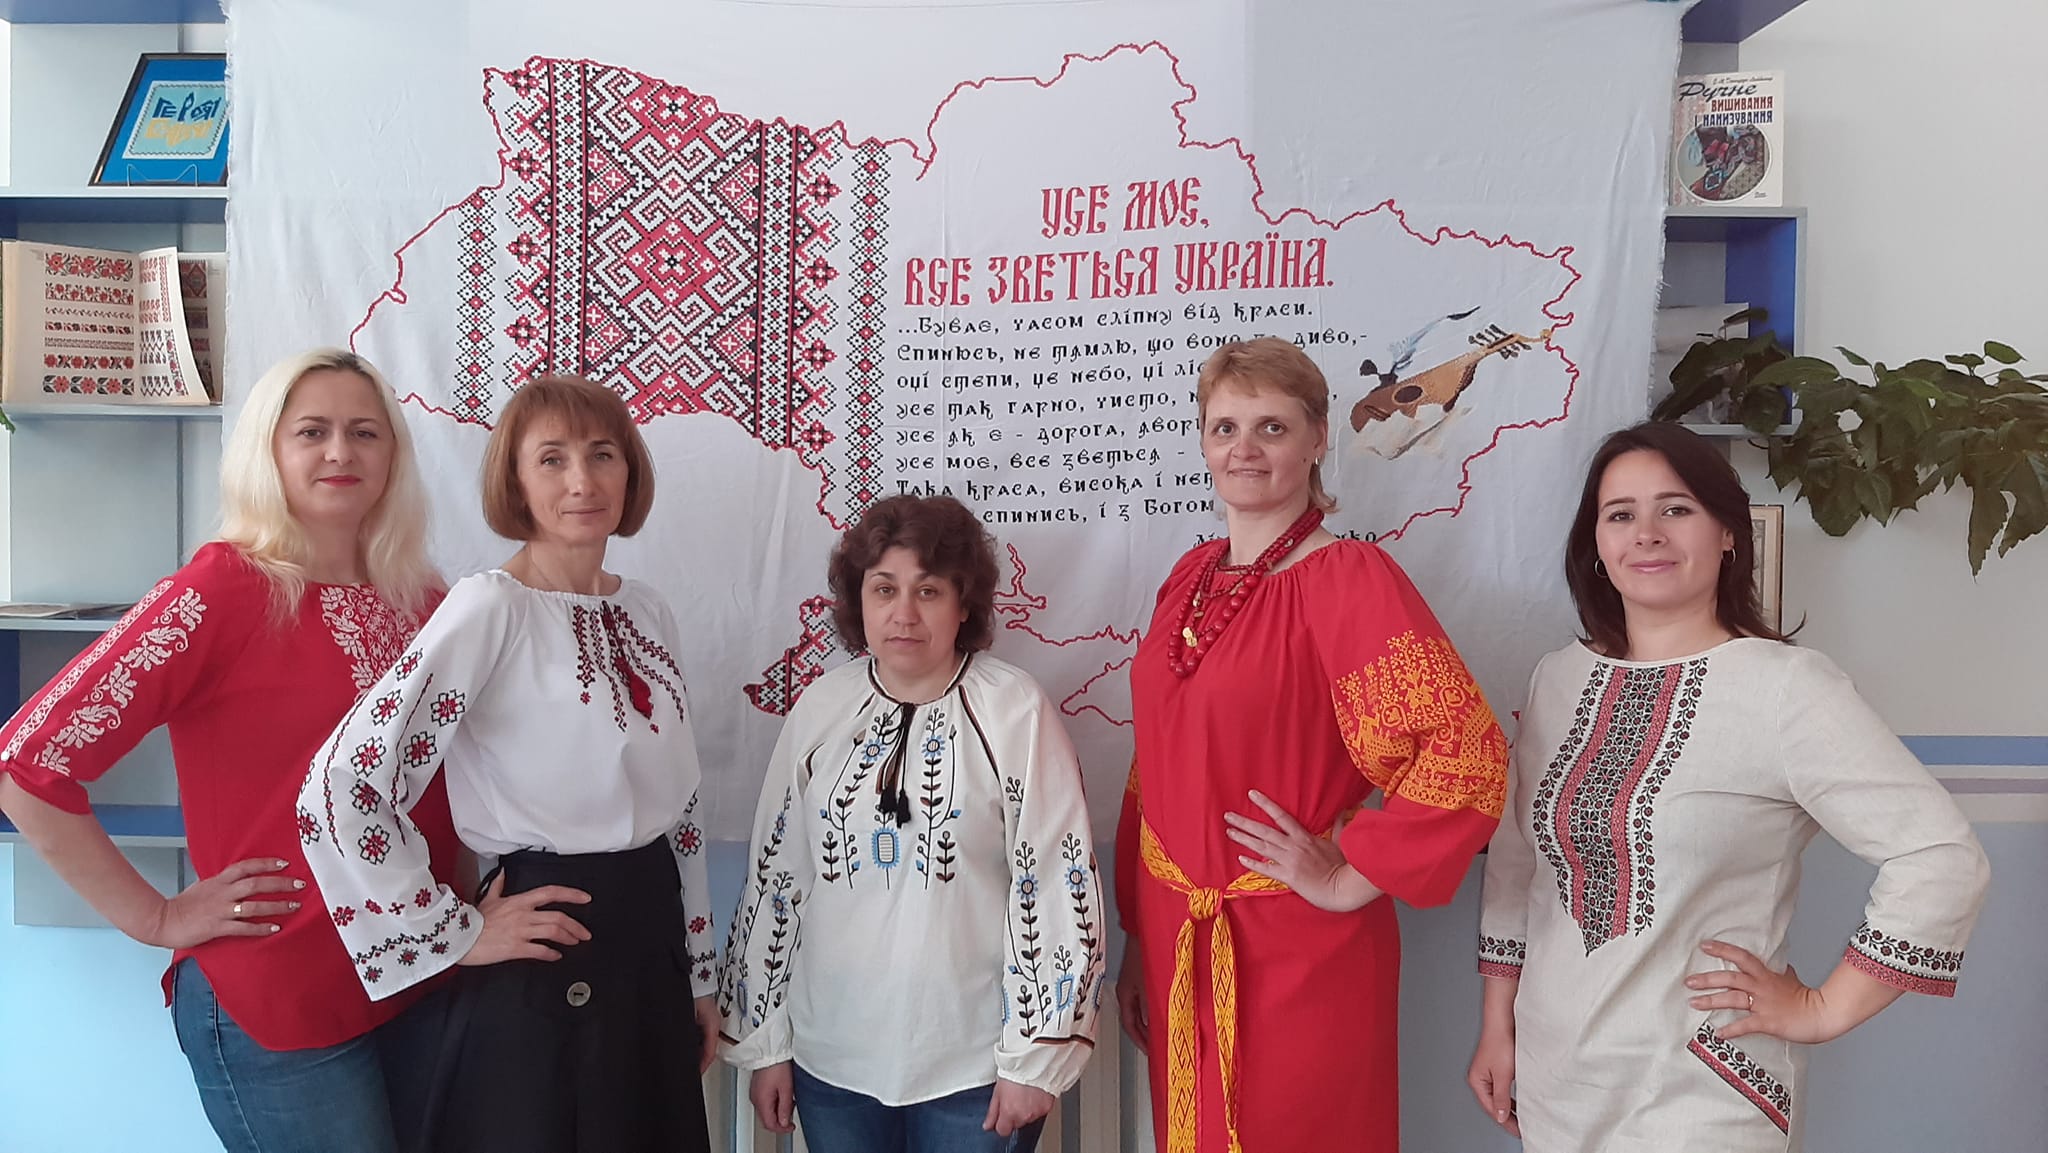 Вышиванка шагает по Белгороду-Днестровщине: как отметили праздник в общинах района